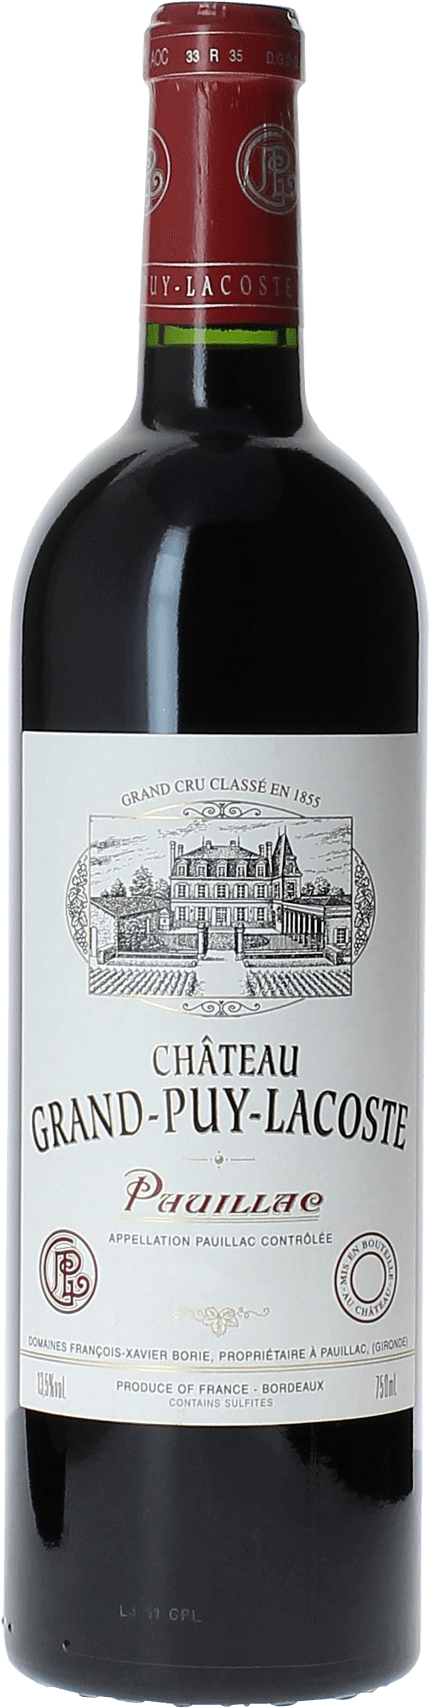 Grand puy lacoste 2020 5 me Grand cru class Pauillac, Bordeaux rouge